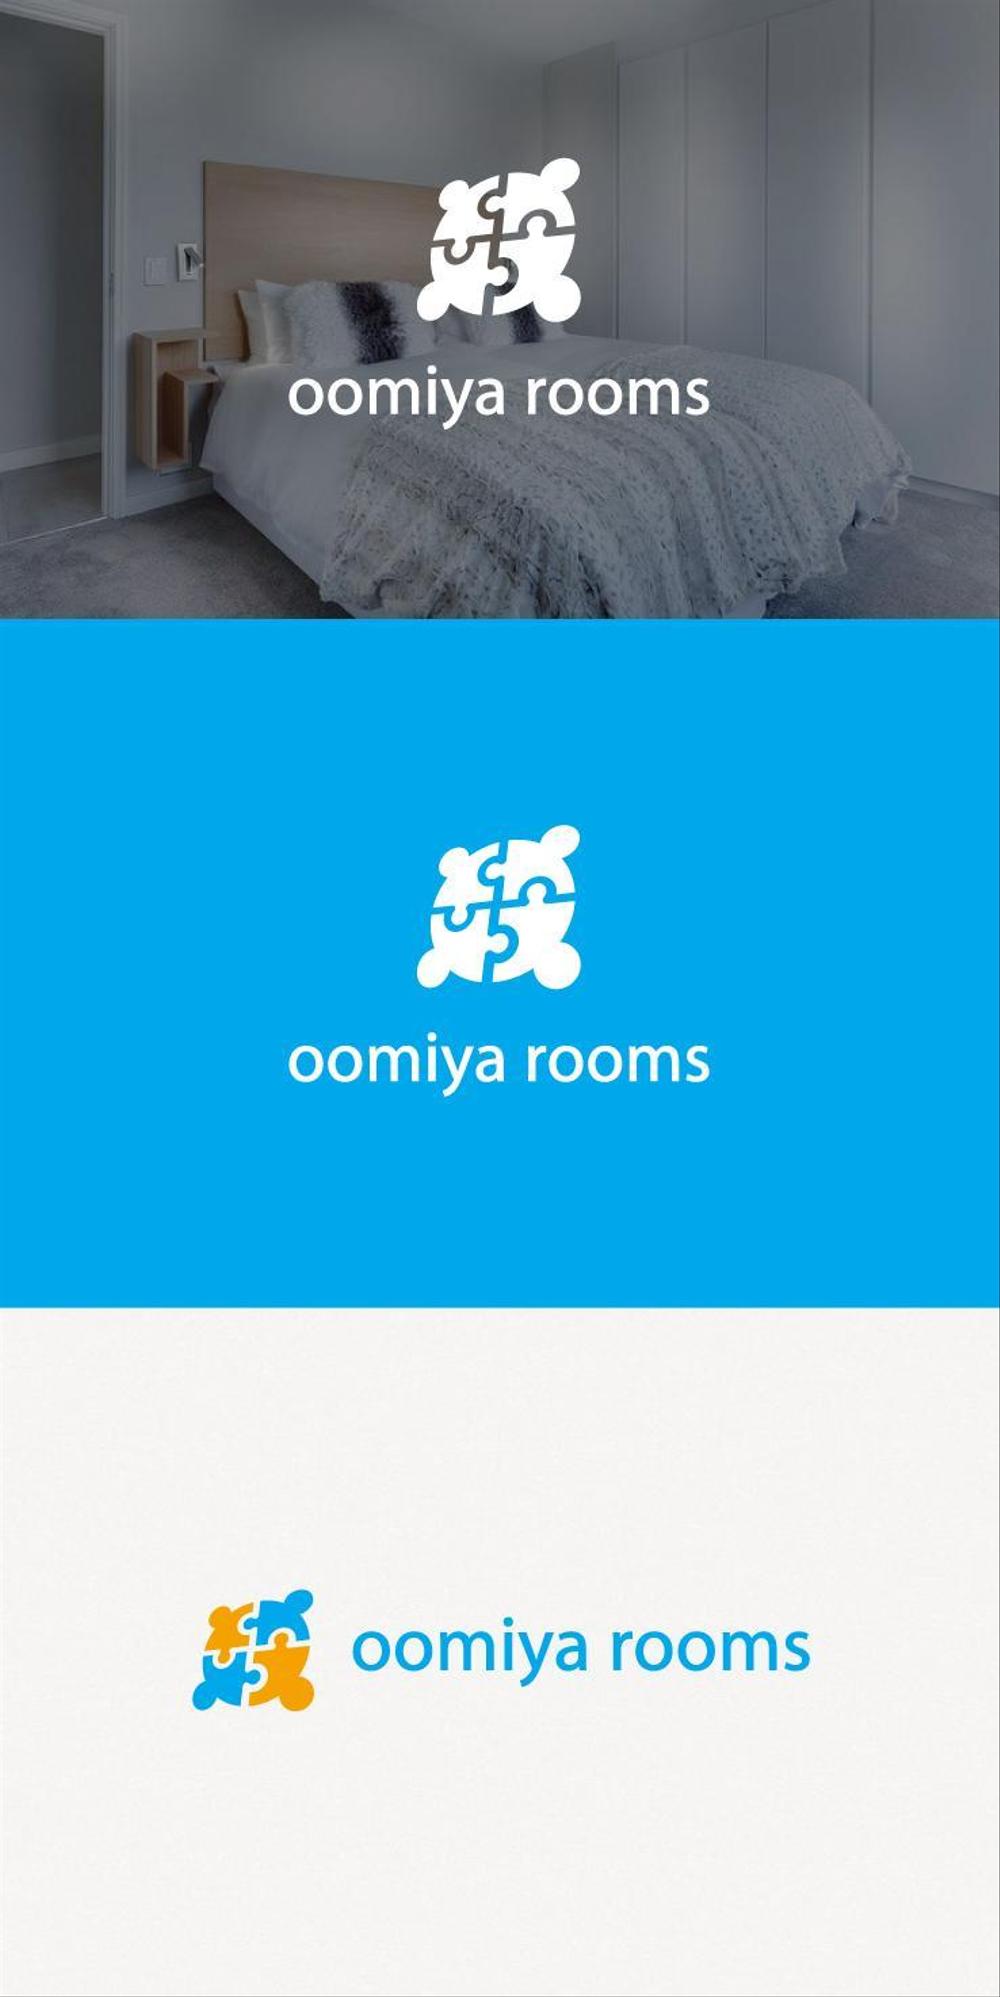 民泊施設「oomiya rooms」のロゴ